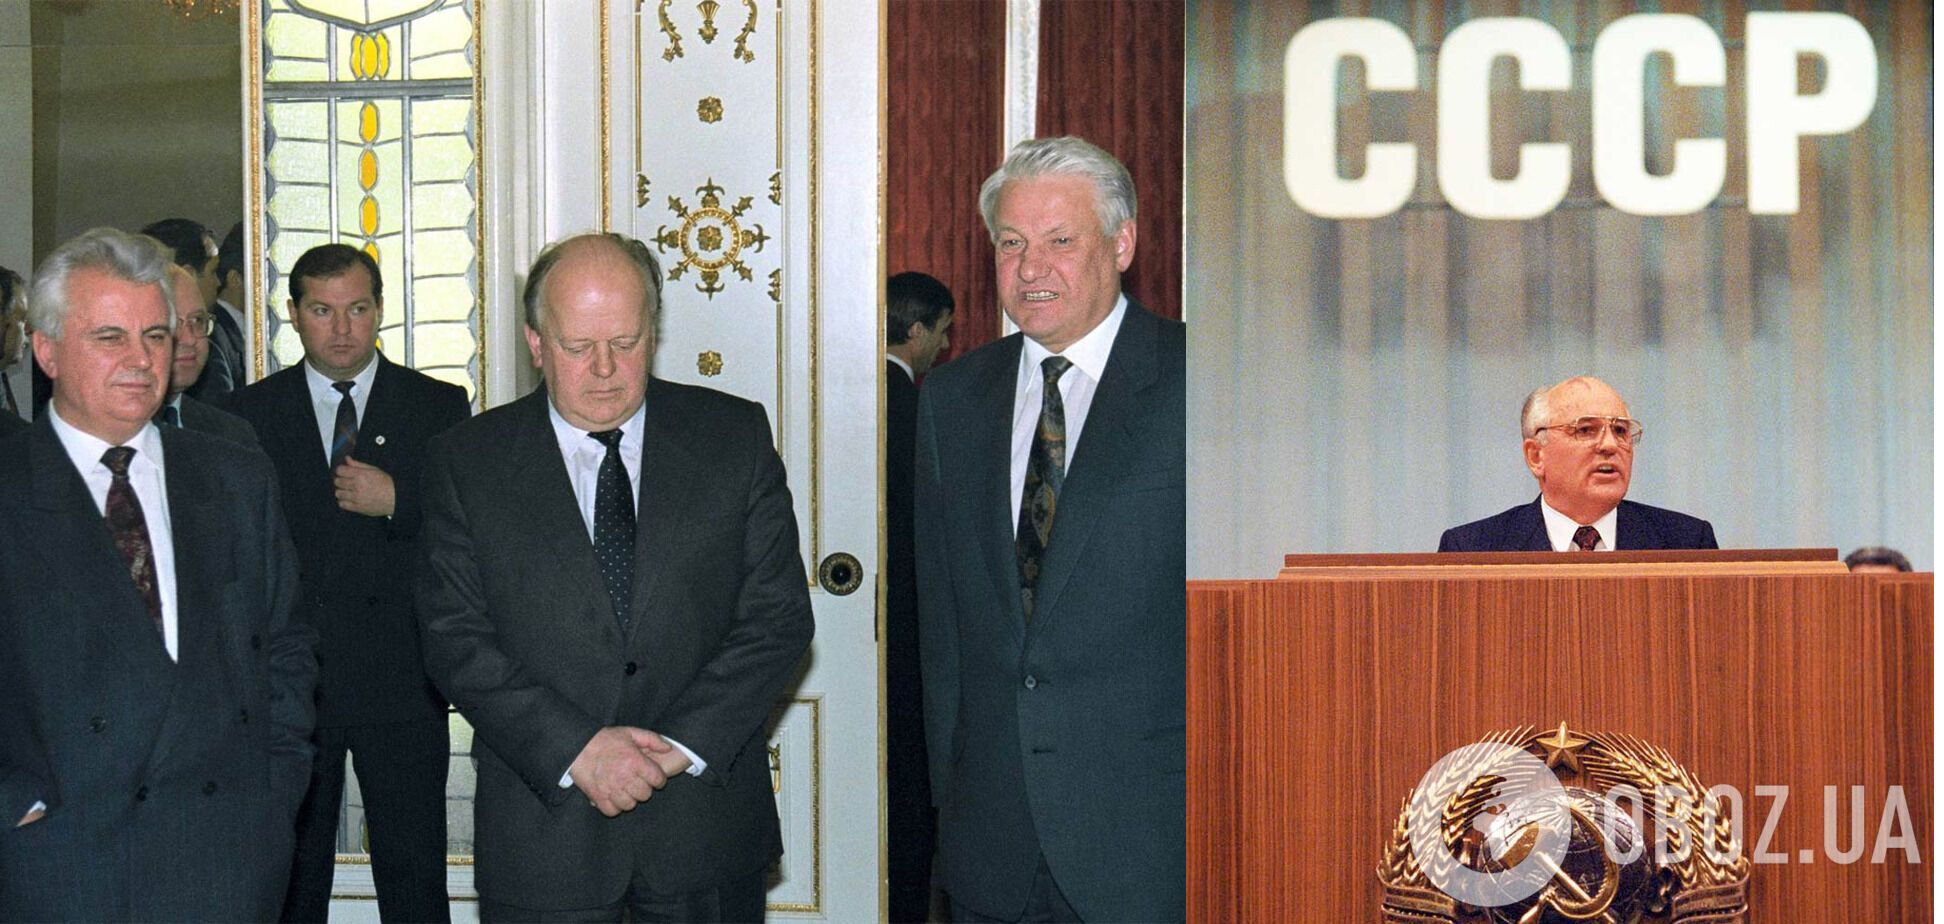 Леонід Кравчук, Станіслав Шушкевич і Борис Єльцин (зліва направо) після підписання Біловезької угоди; Михайло Горбачов